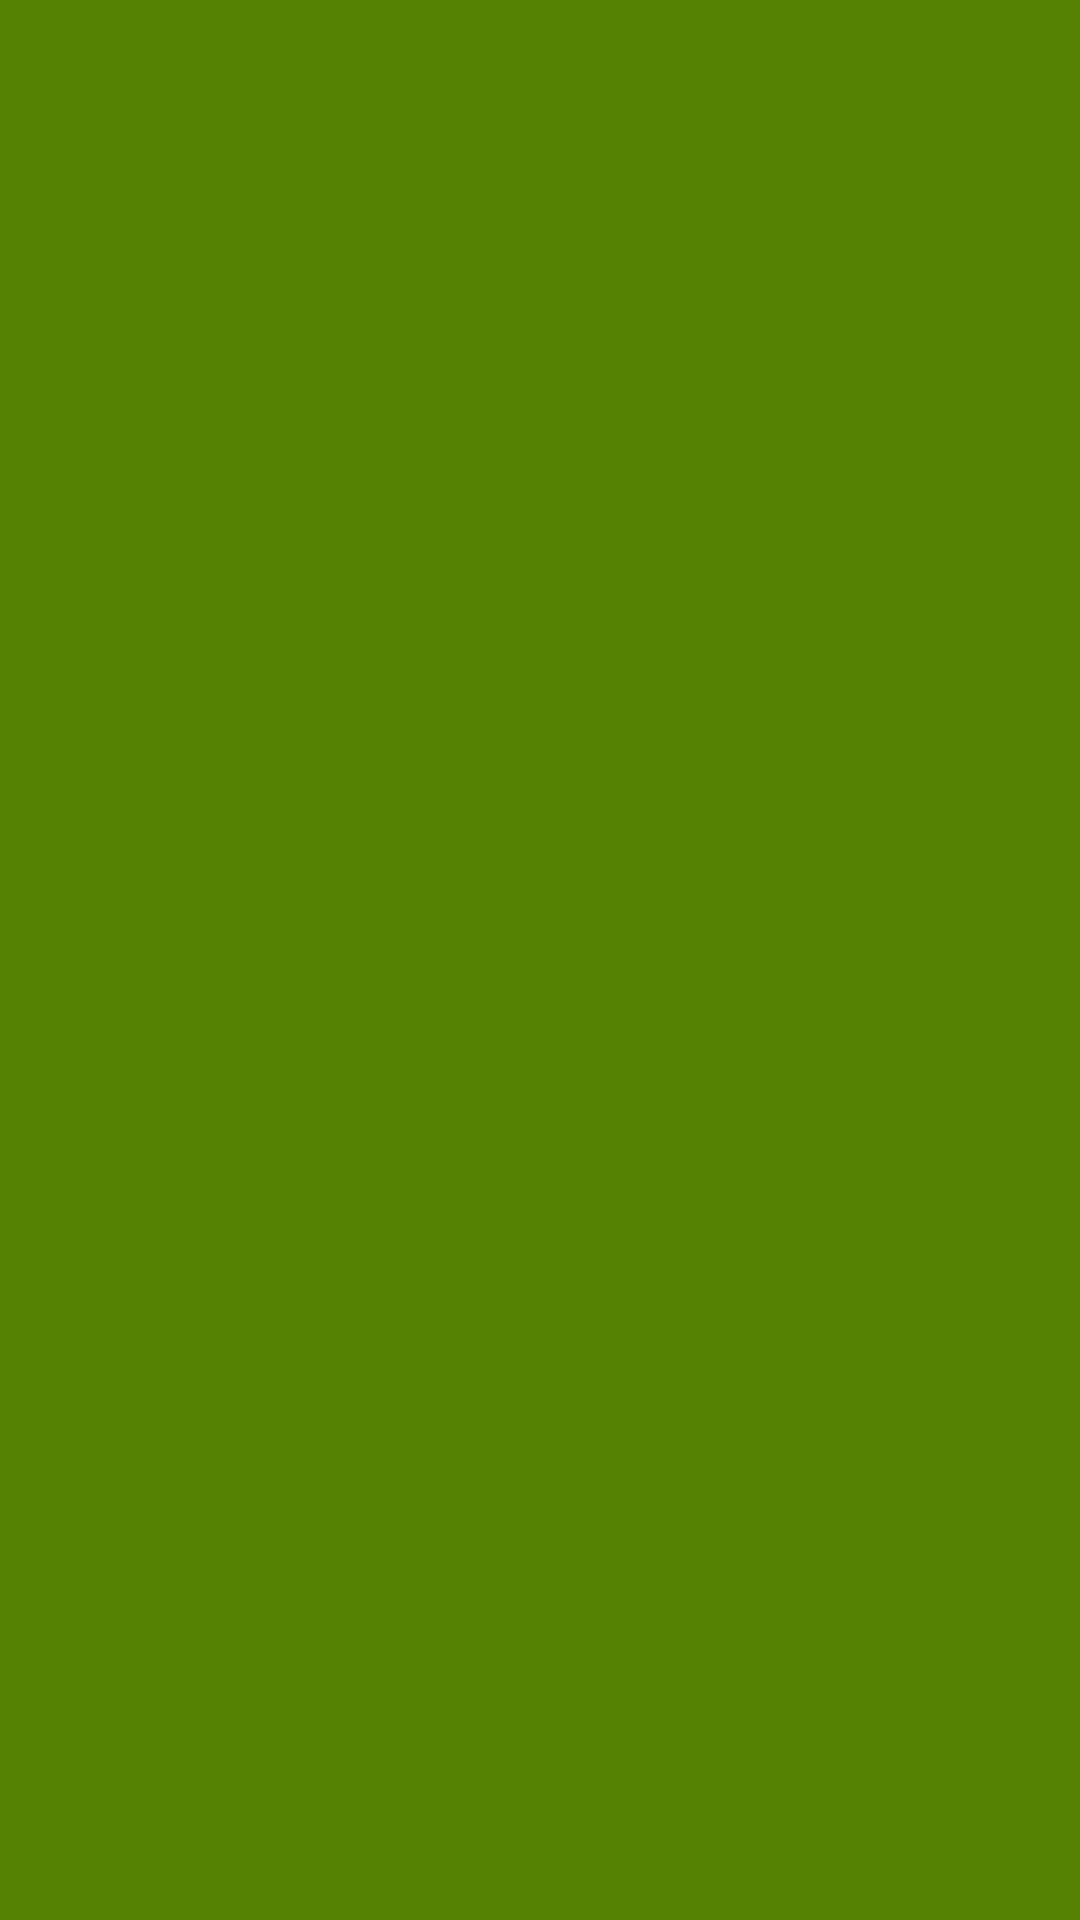 1080x1920 Avocado Solid Color Background